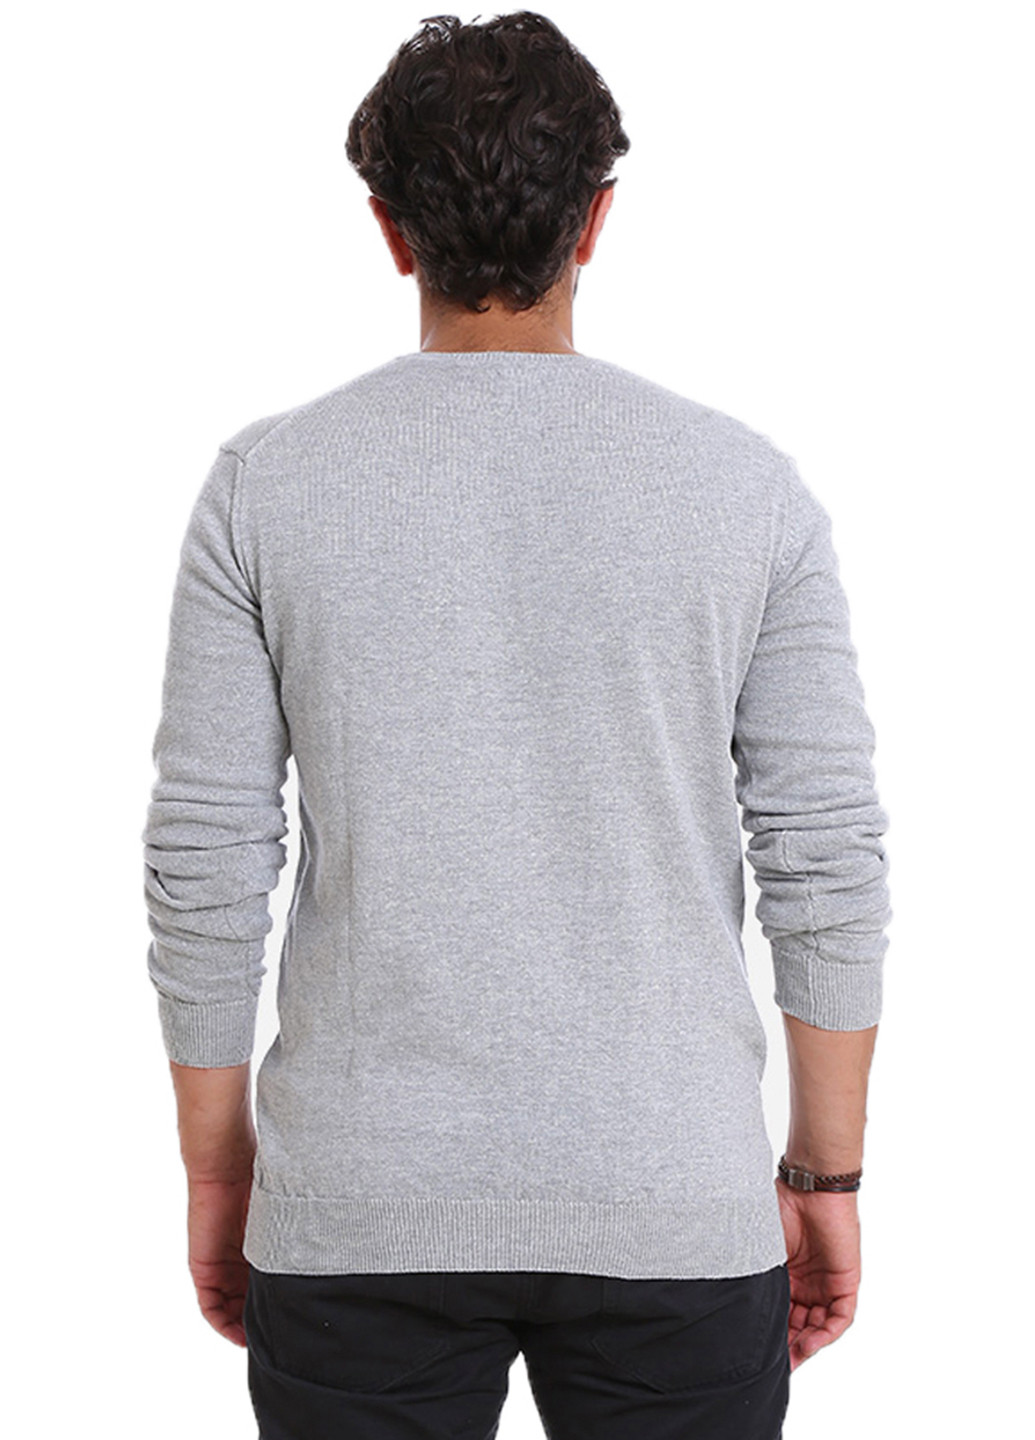 Светло-серый демисезонный пуловер пуловер Яavin